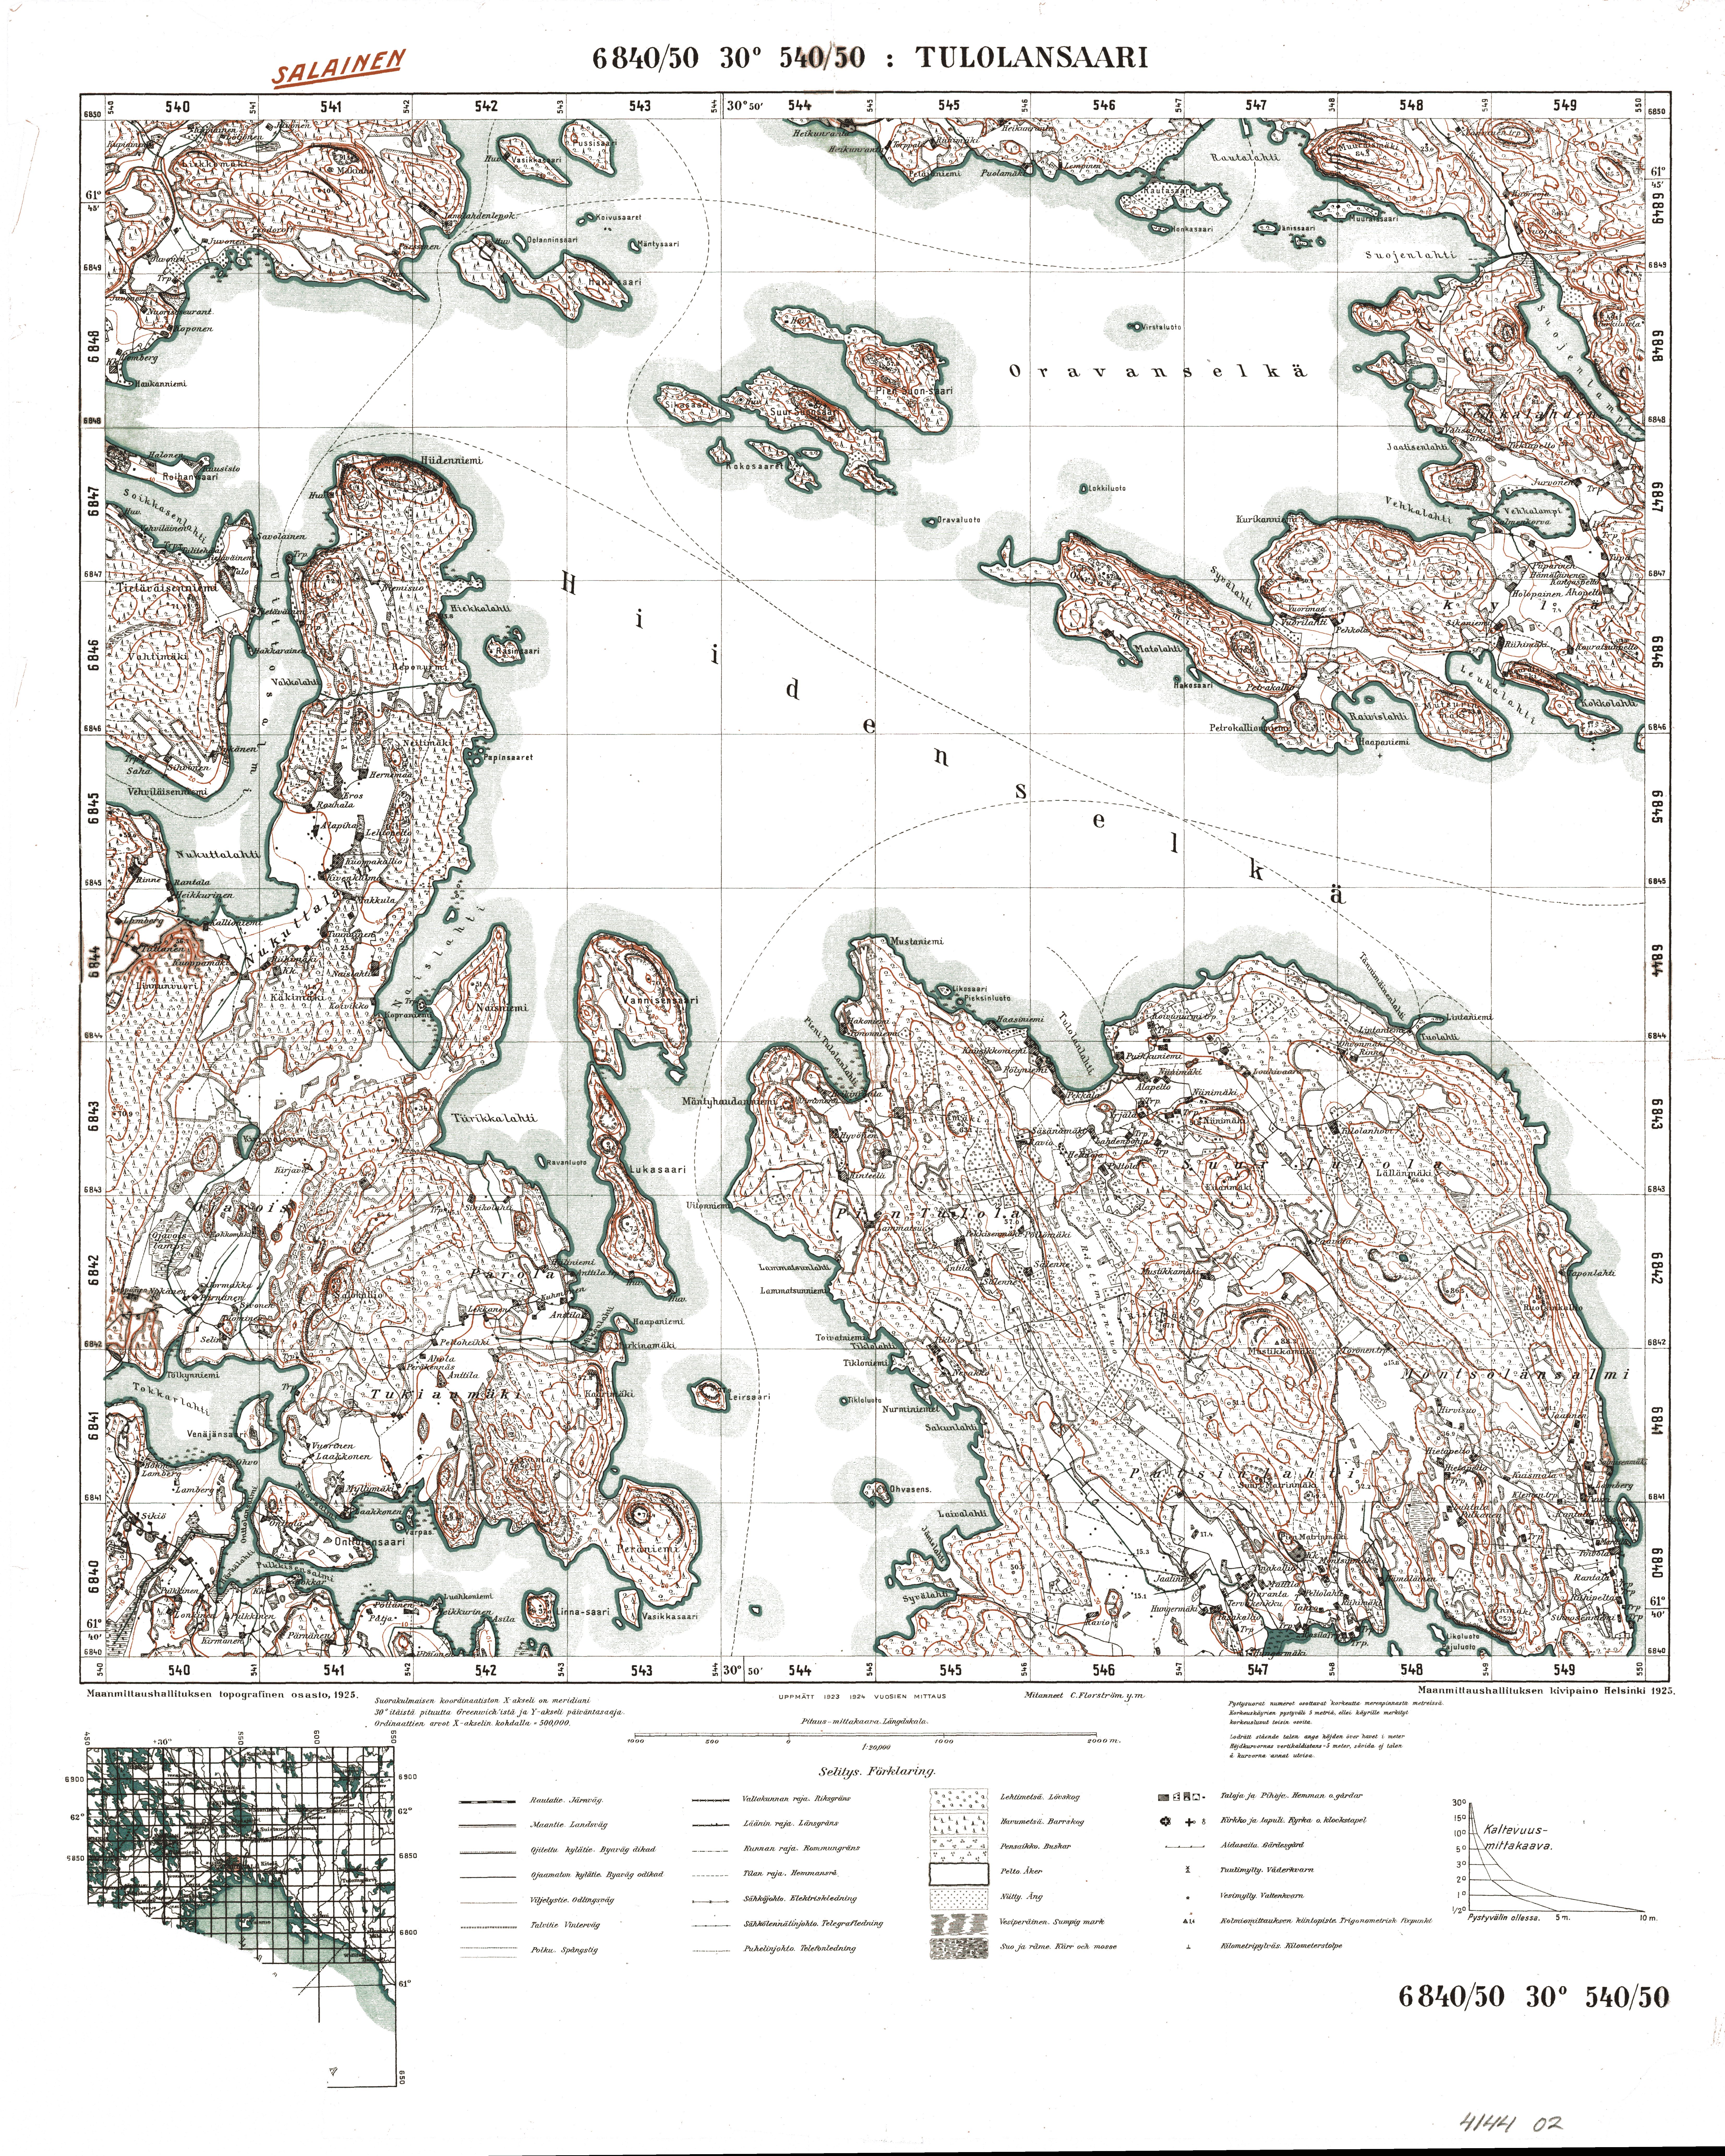 Tulolansaari. Topografikartta 414402. Topographic map from 1938